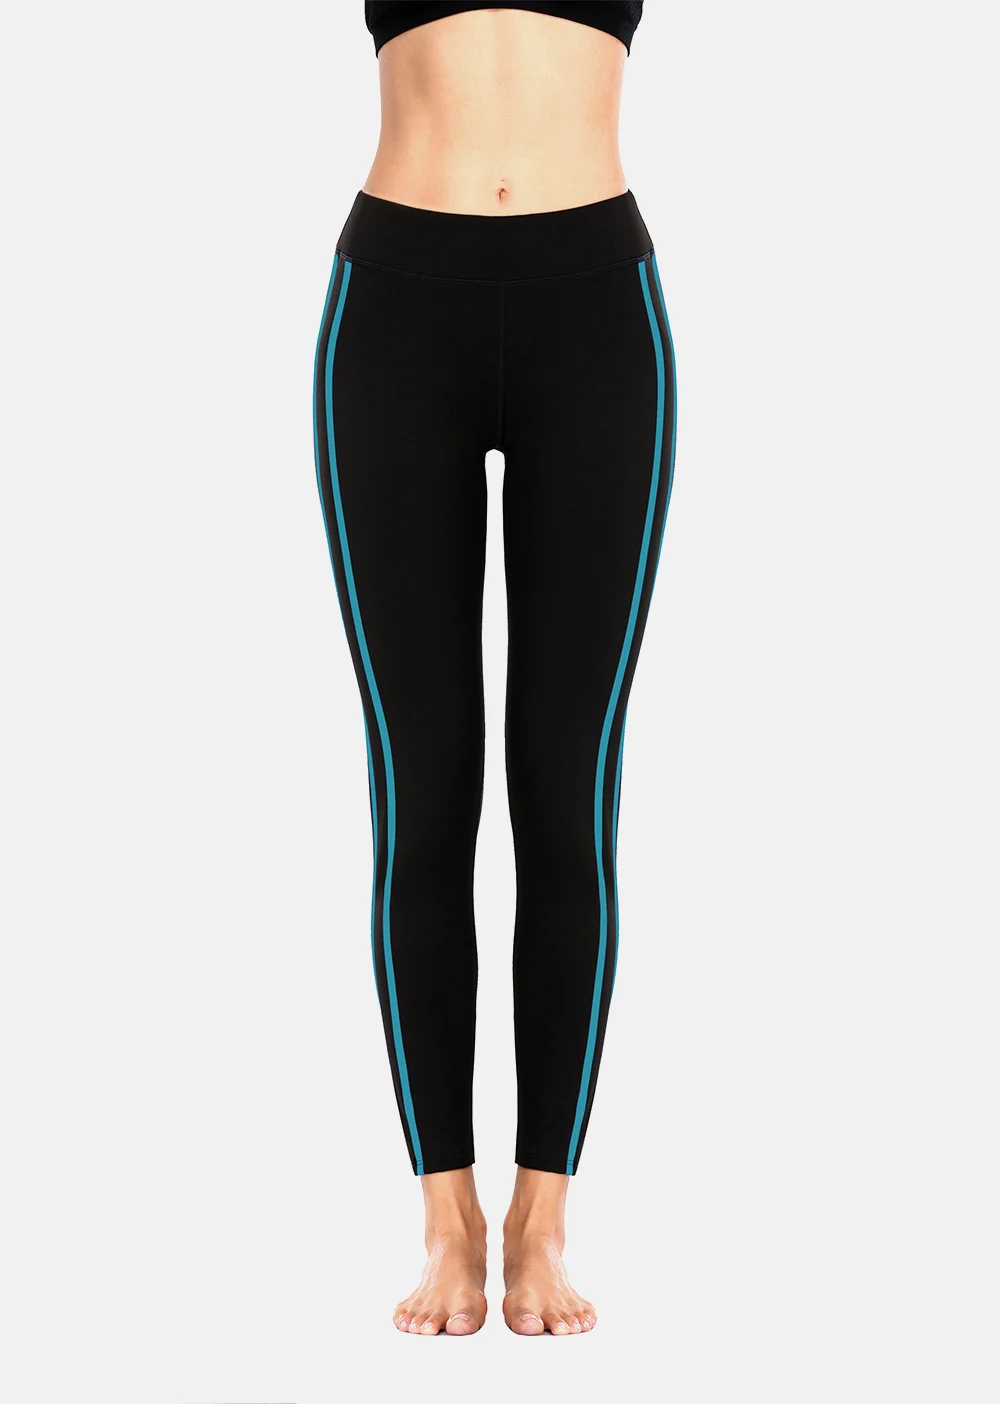 Qipo для женщин кальсоны йоги тонкий высокая талия спортивные тренировочные брюки фитнес эластичные штаны Бег Спортивная одежда